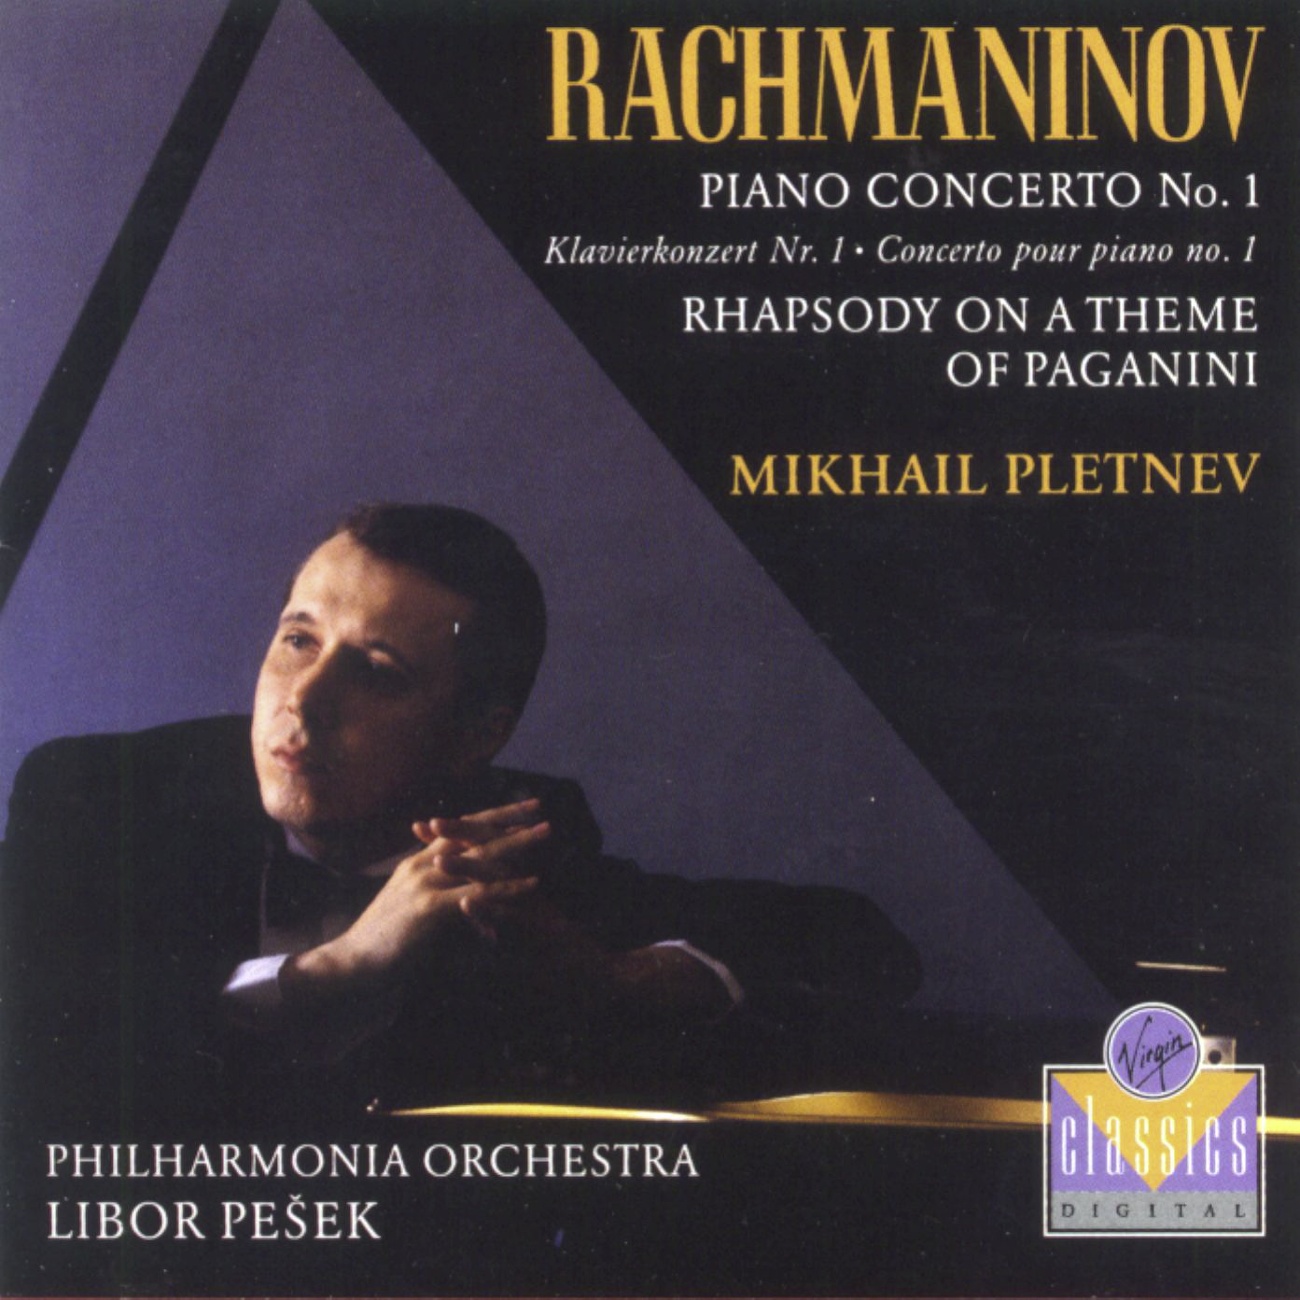 Rhapsody on a Theme of Paganini: Variation IV  Piu vivo